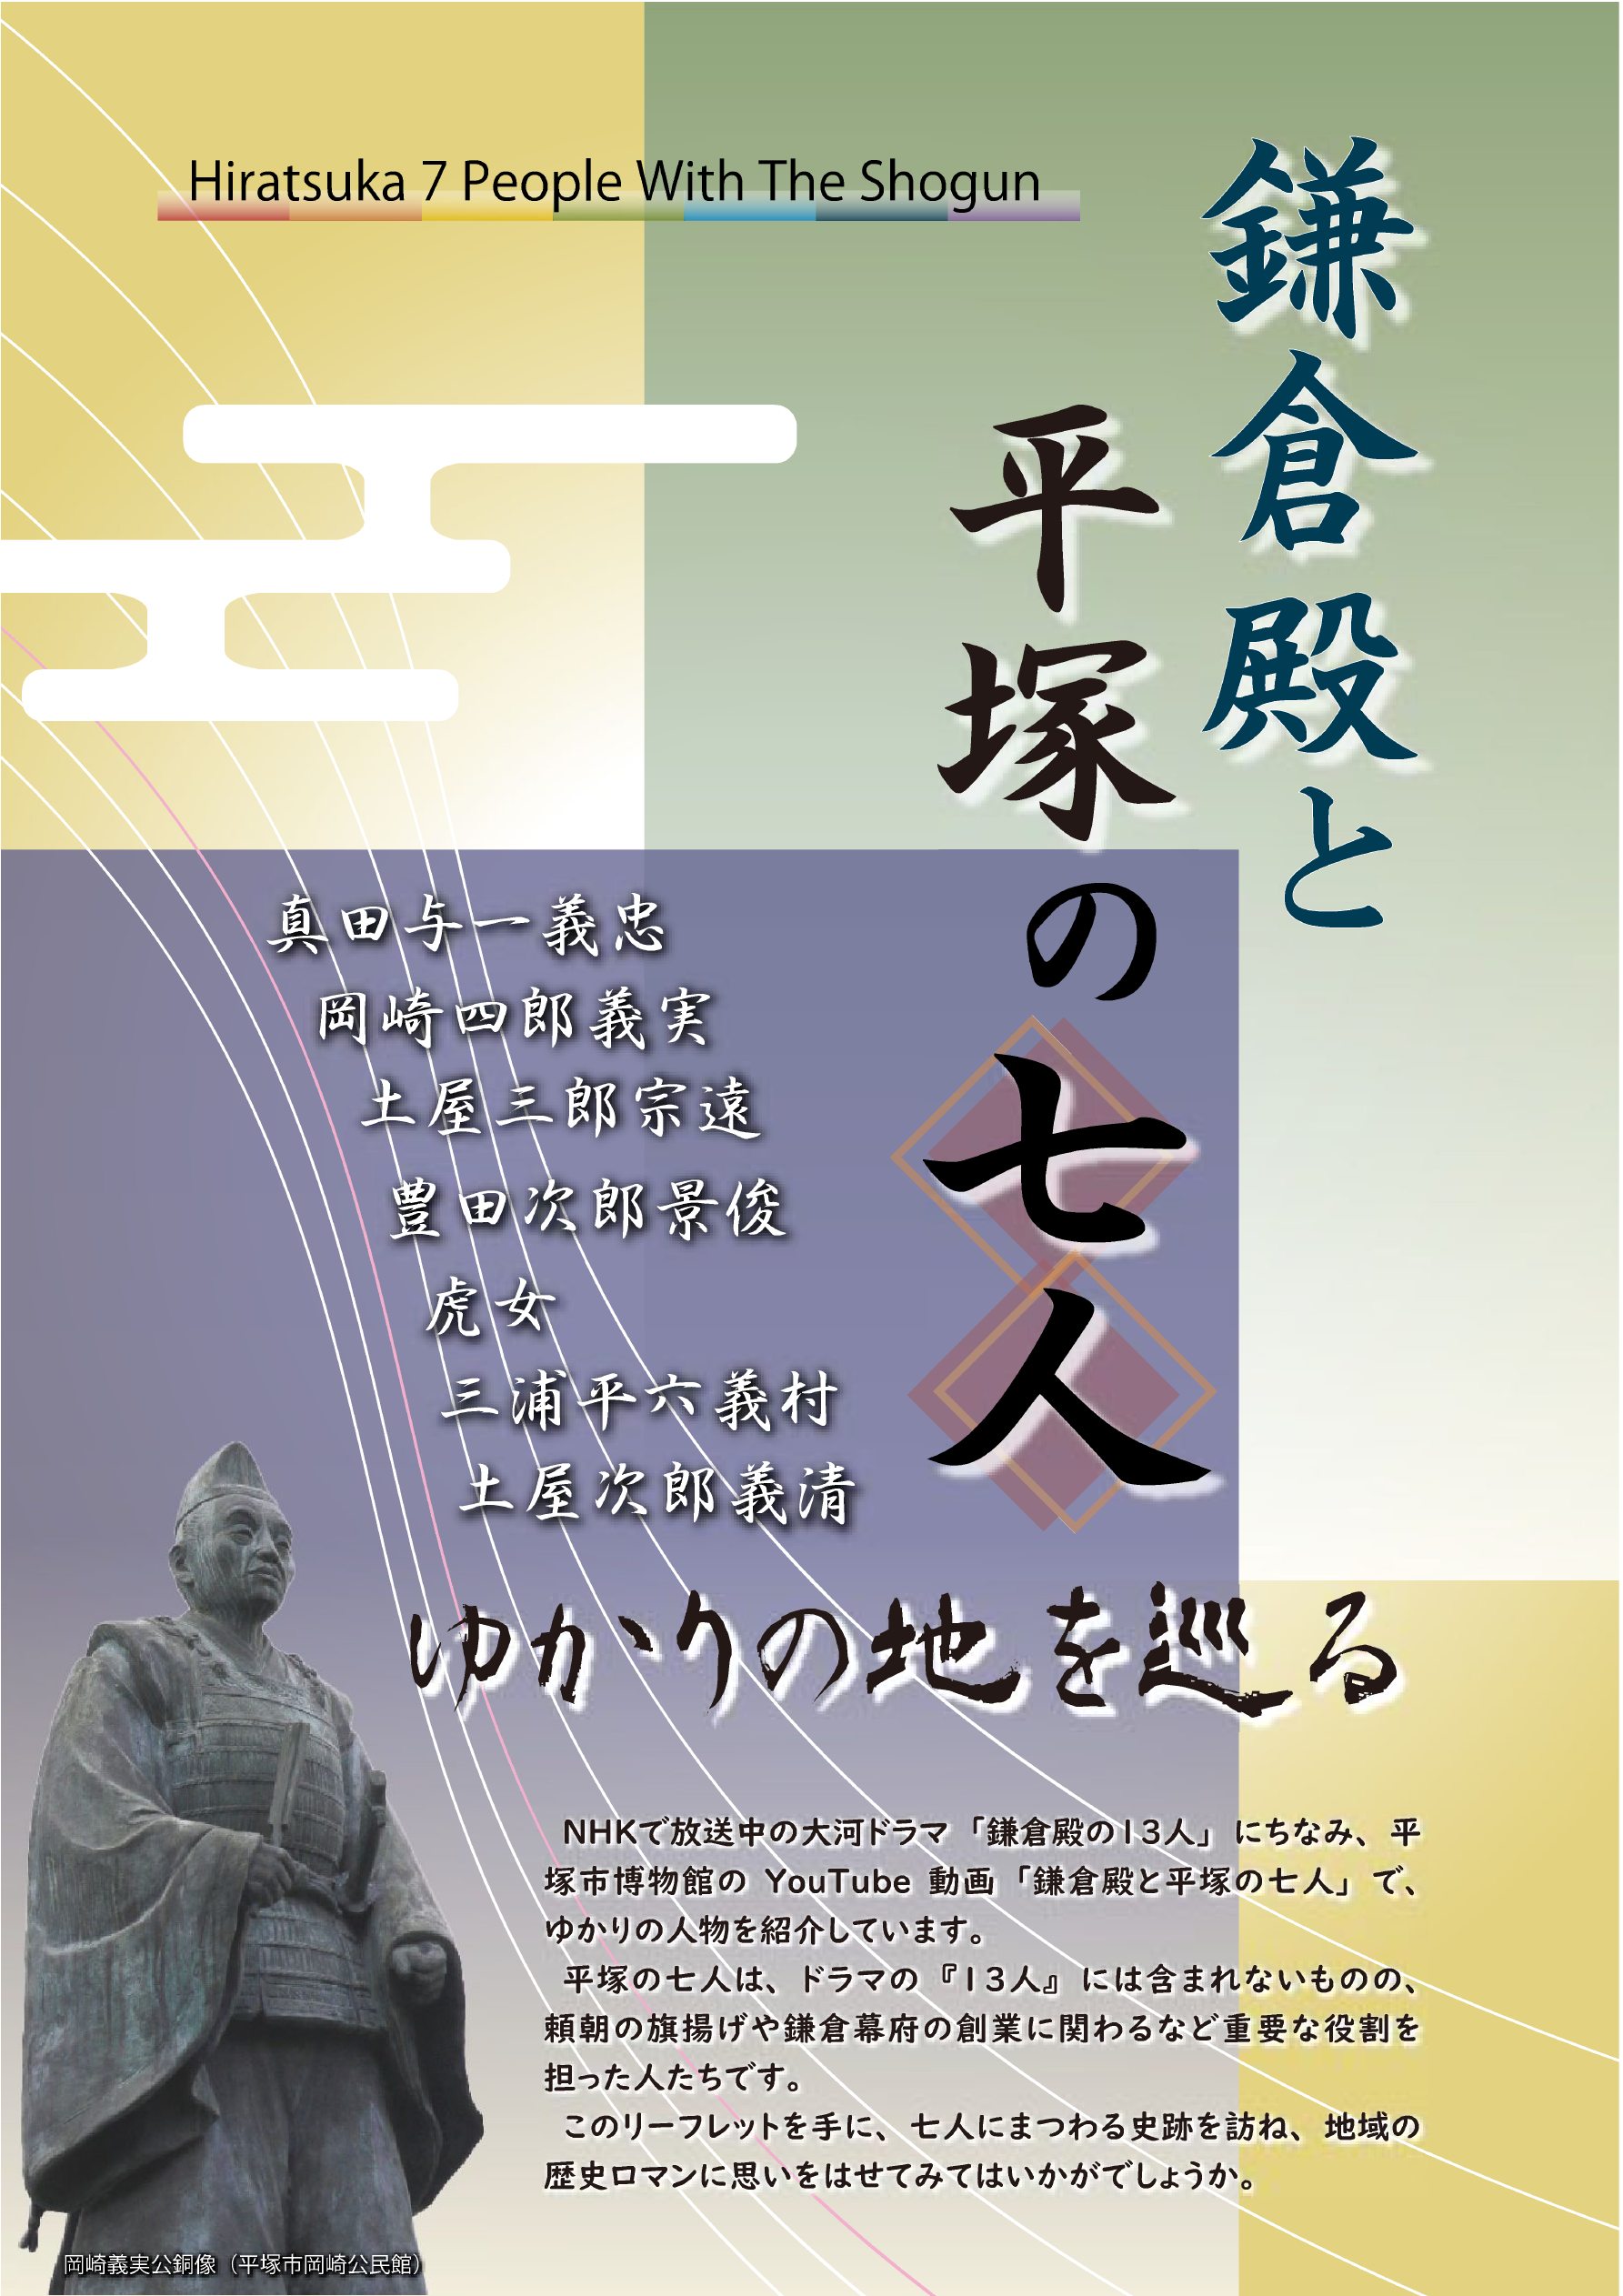 「鎌倉殿と平塚の七人」のリーフレットの表紙